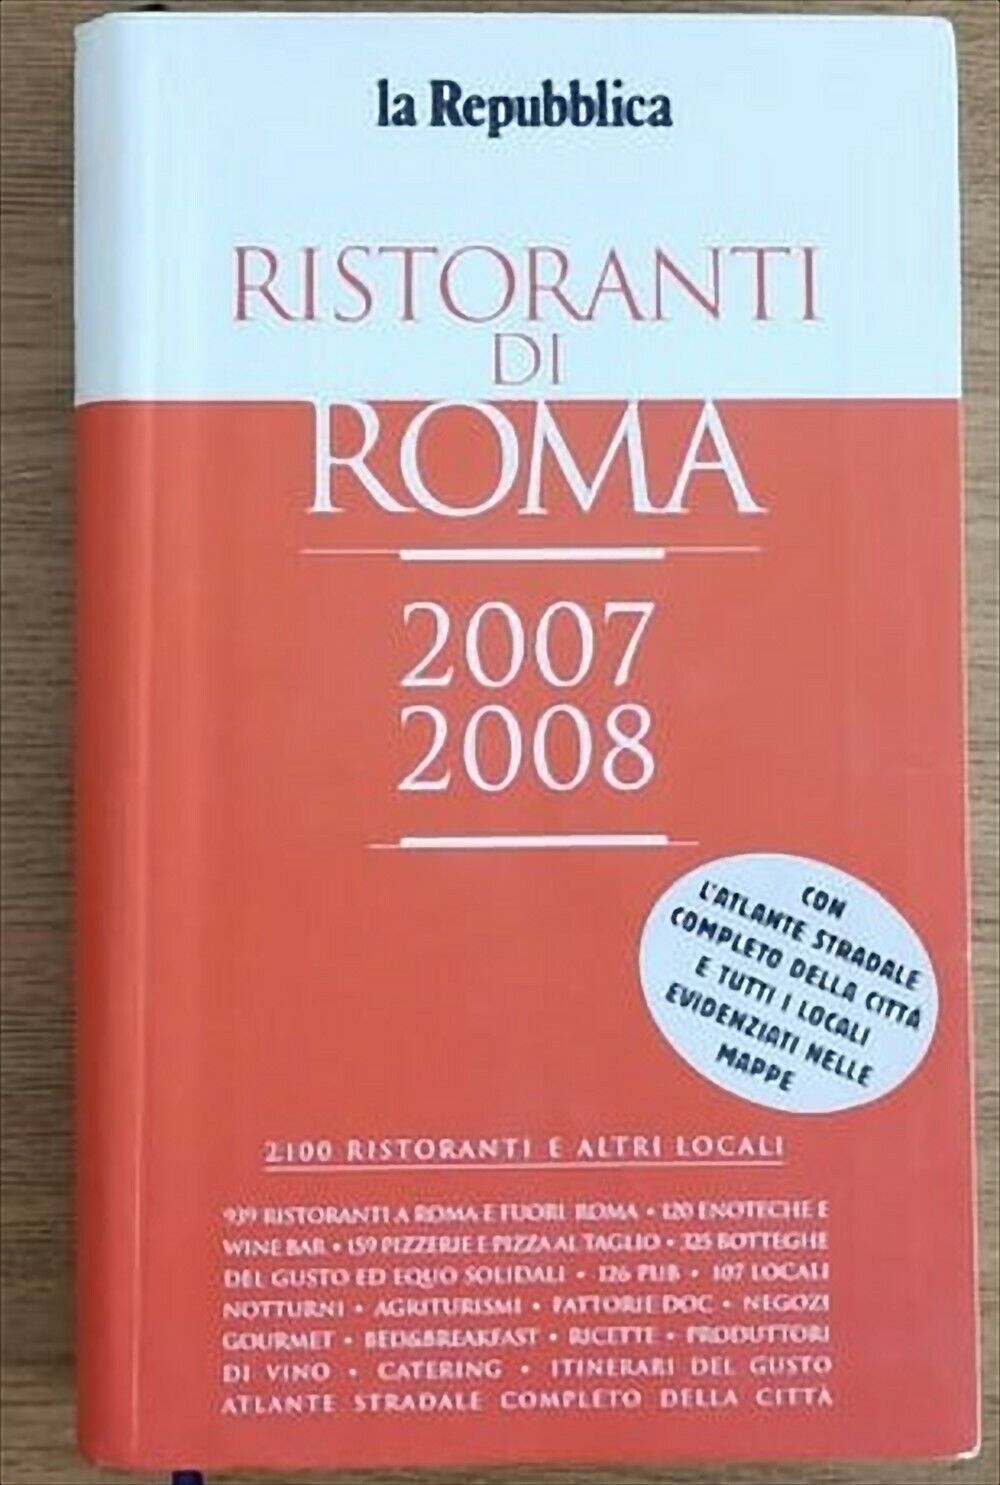 Ristoranti di Roma 2007/2008 - AA. VV. - La repubblica - 2007 - AR